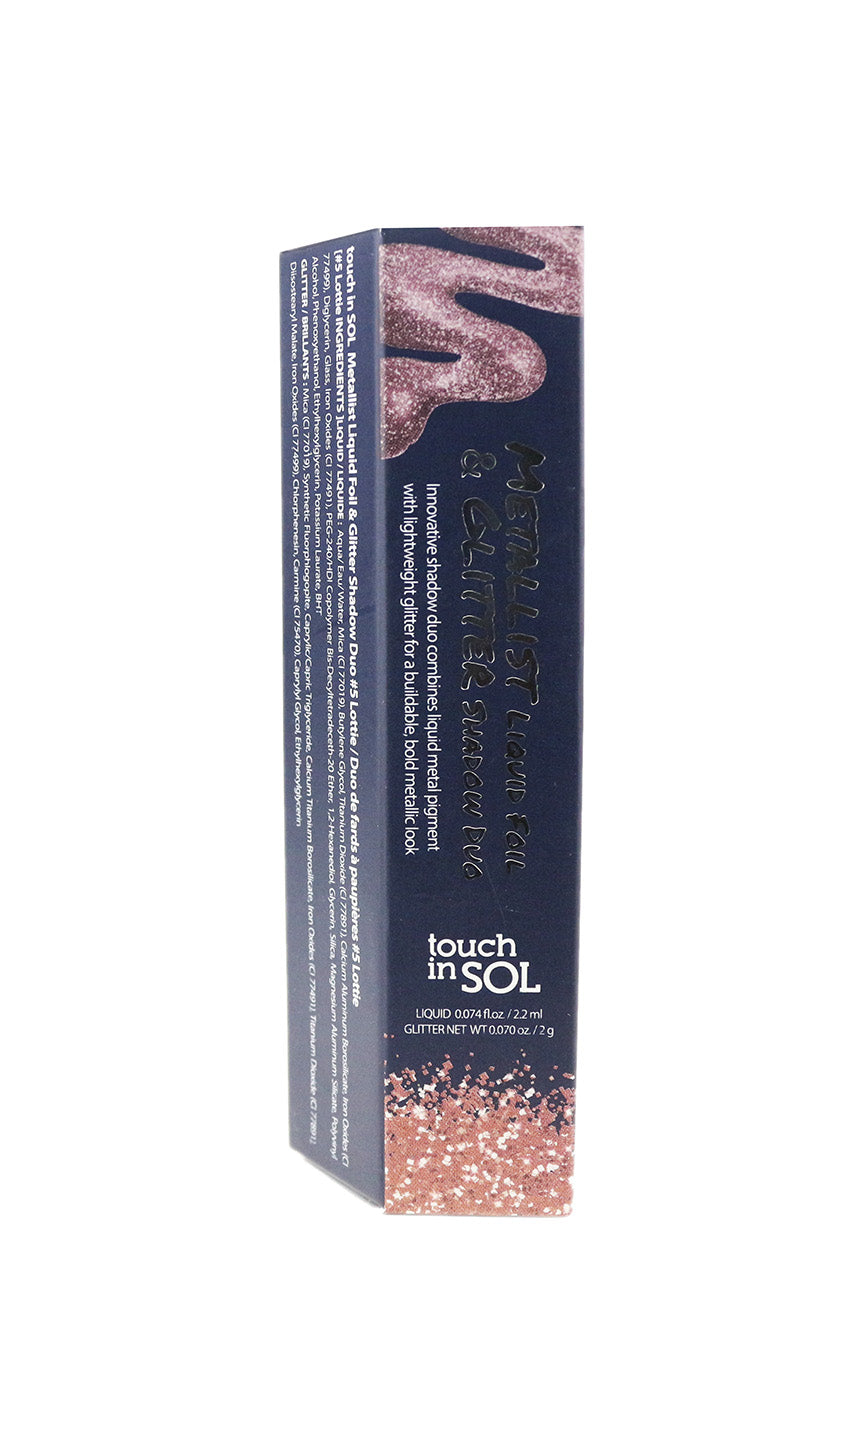 Touch In Sol Metallist Liquid Foil & Glitter Shadow Duo '#5 Lottie' New In Box